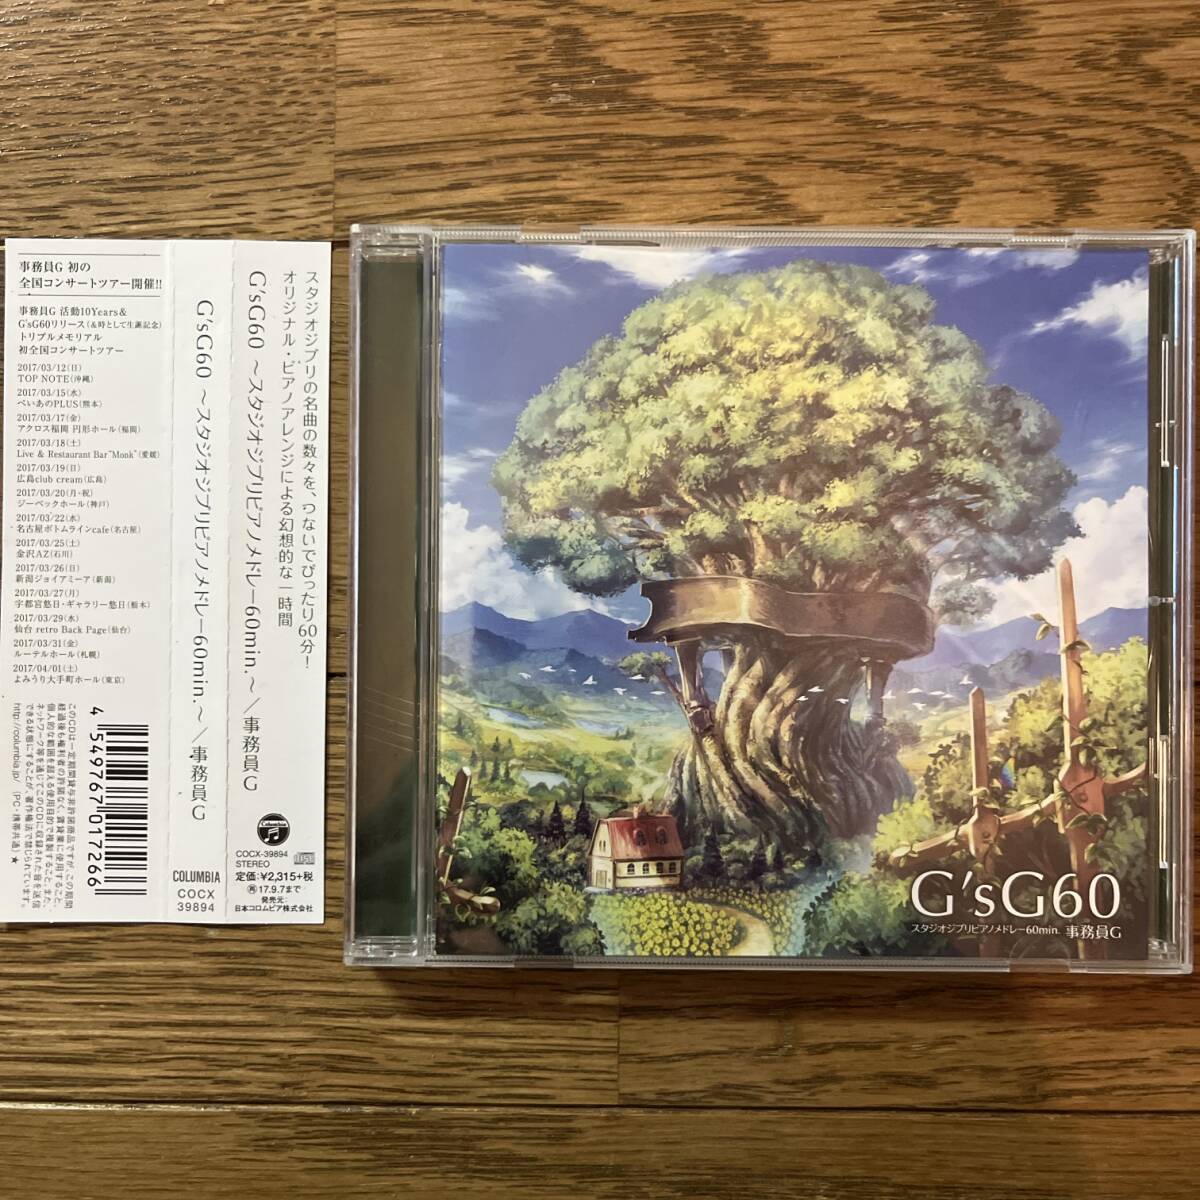  записано в Японии CD GsG60 Studio Ghibli фортепьяно medore-60min. CD офисная работа участник G COCX-39894 с поясом оби 